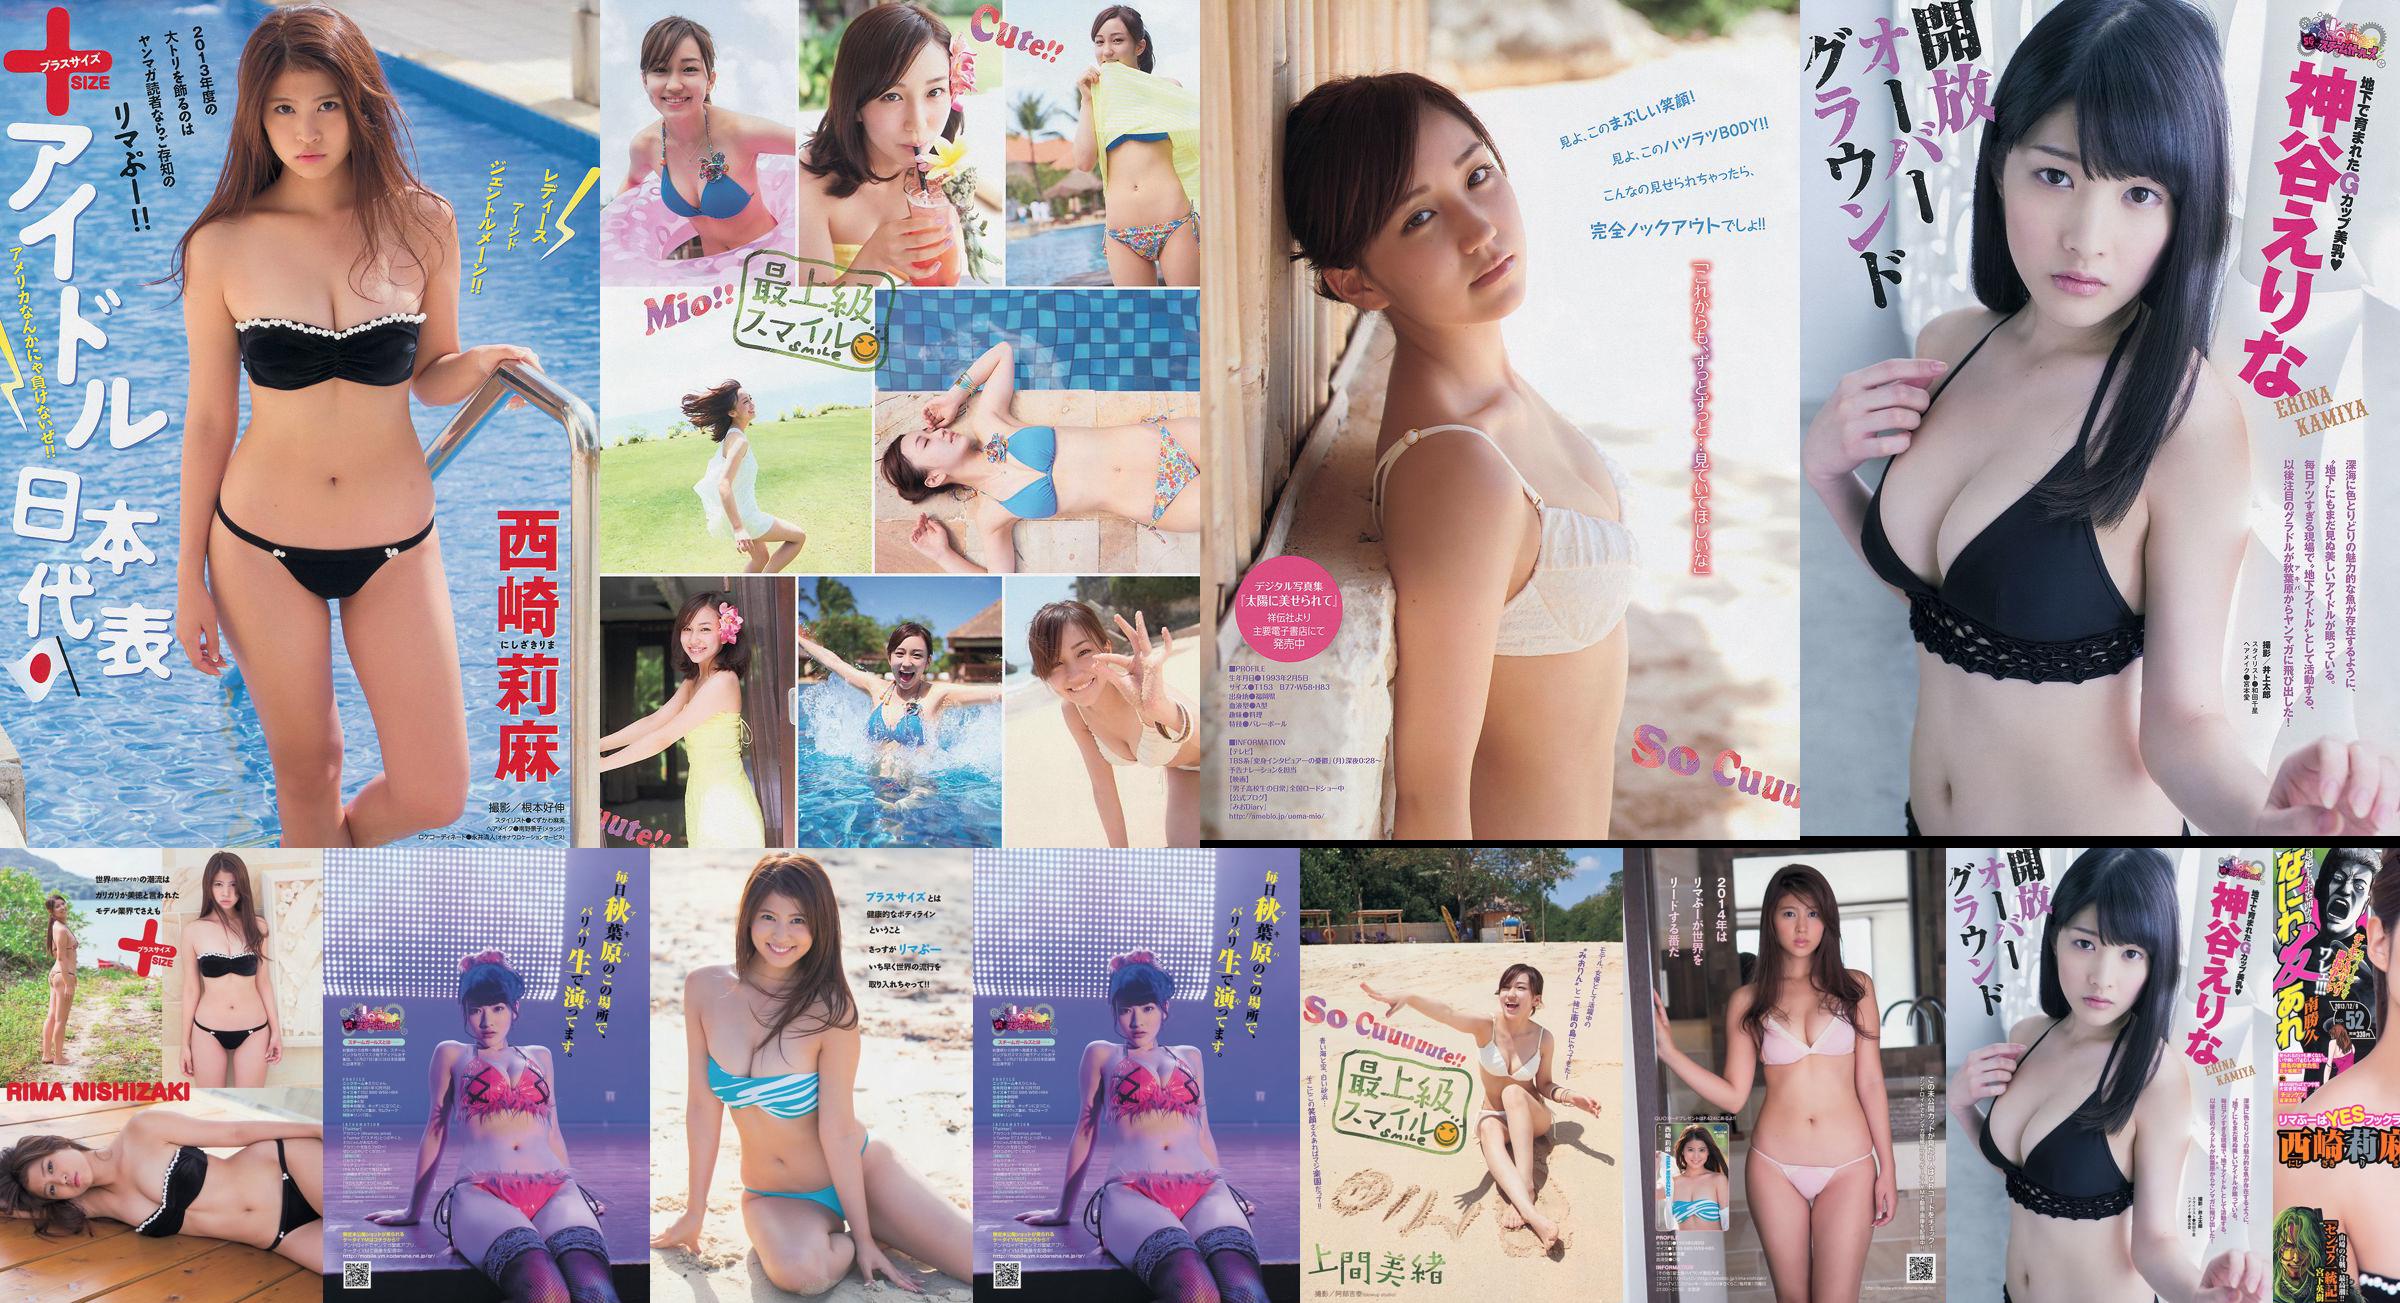 [นิตยสาร Young] Rima Nishizaki Mio Uema Erina Kamiya 2013 No.52 Photo Moshi No.eaee33 หน้า 1